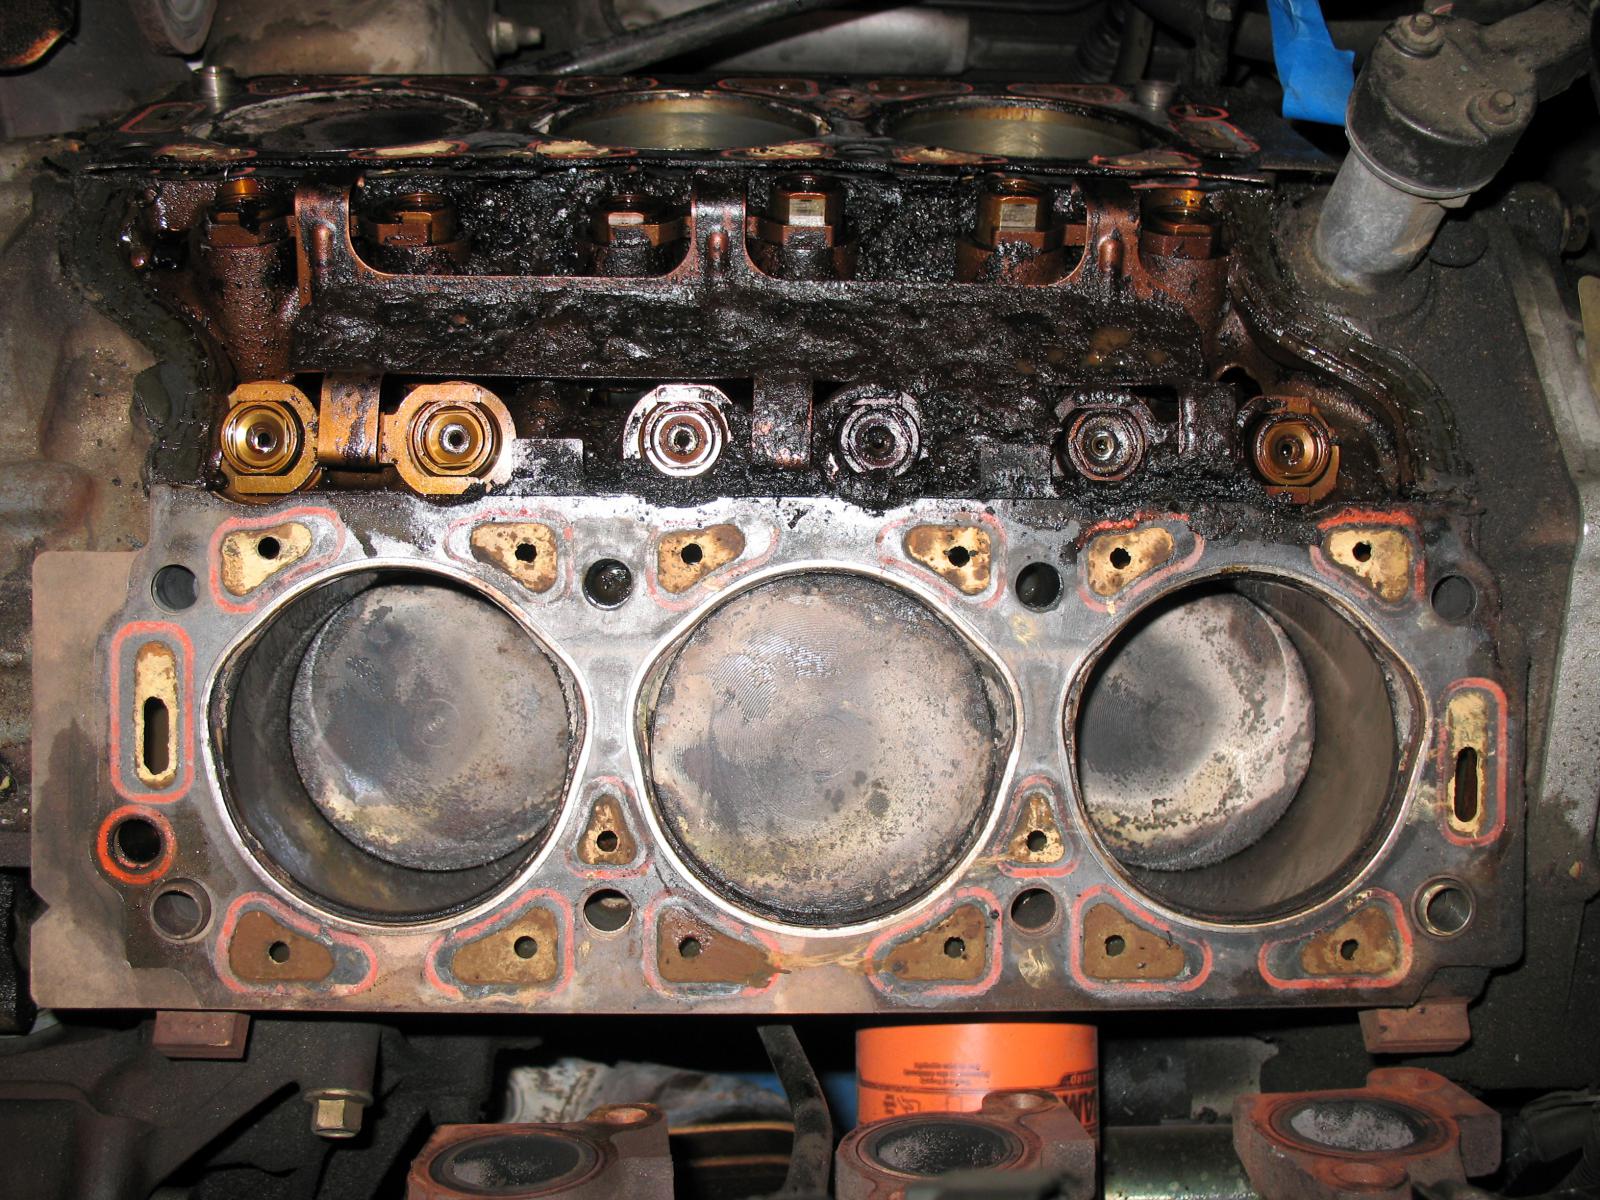 2000 Ford taurus head gasket repair cost #2